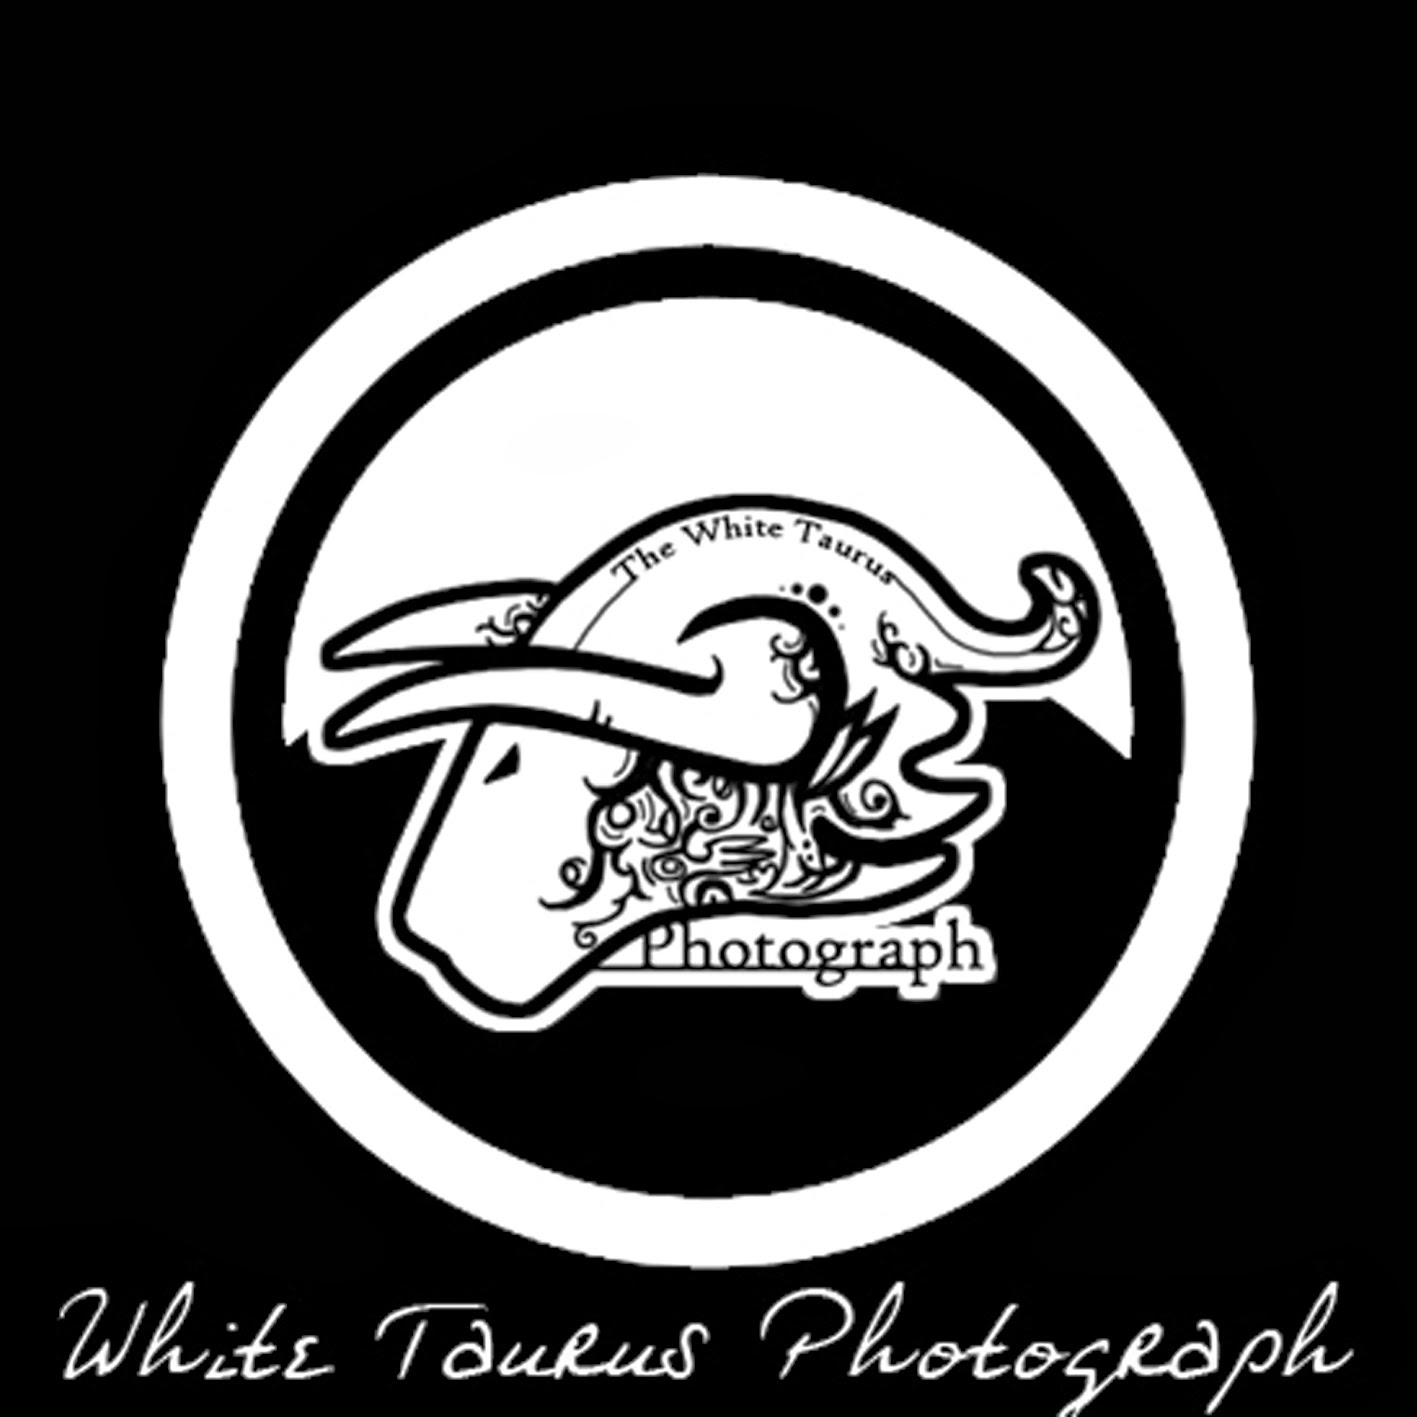 White Taurus Photograph